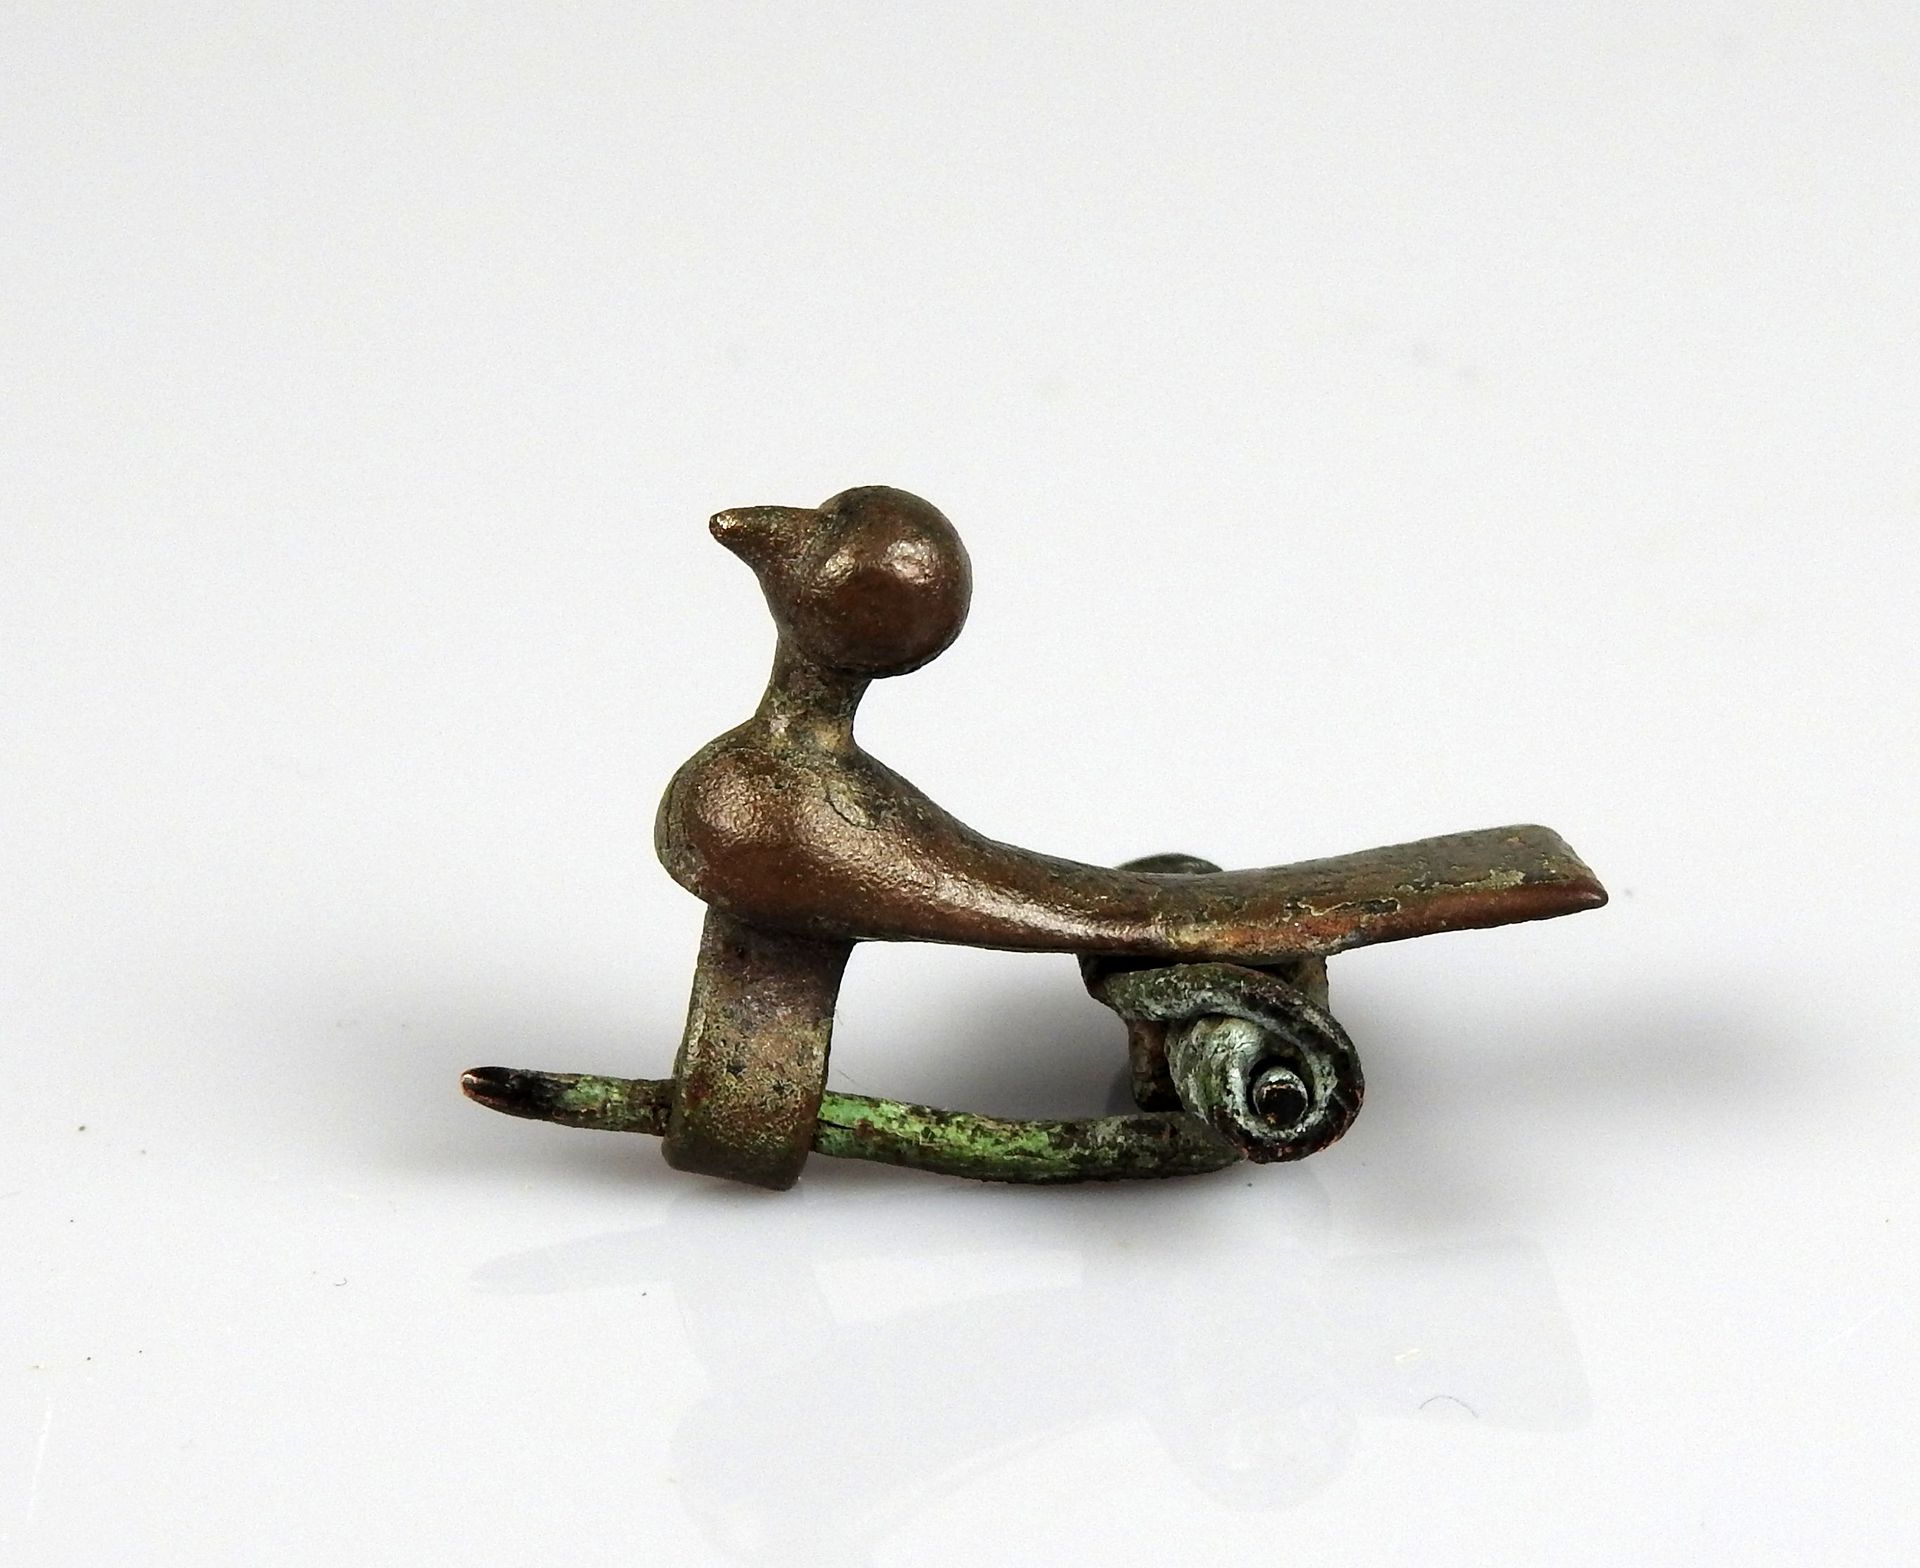 Null Fibule à ressort représentant un oiseau stylisé

Bronze 3.5 cm

Période rom&hellip;